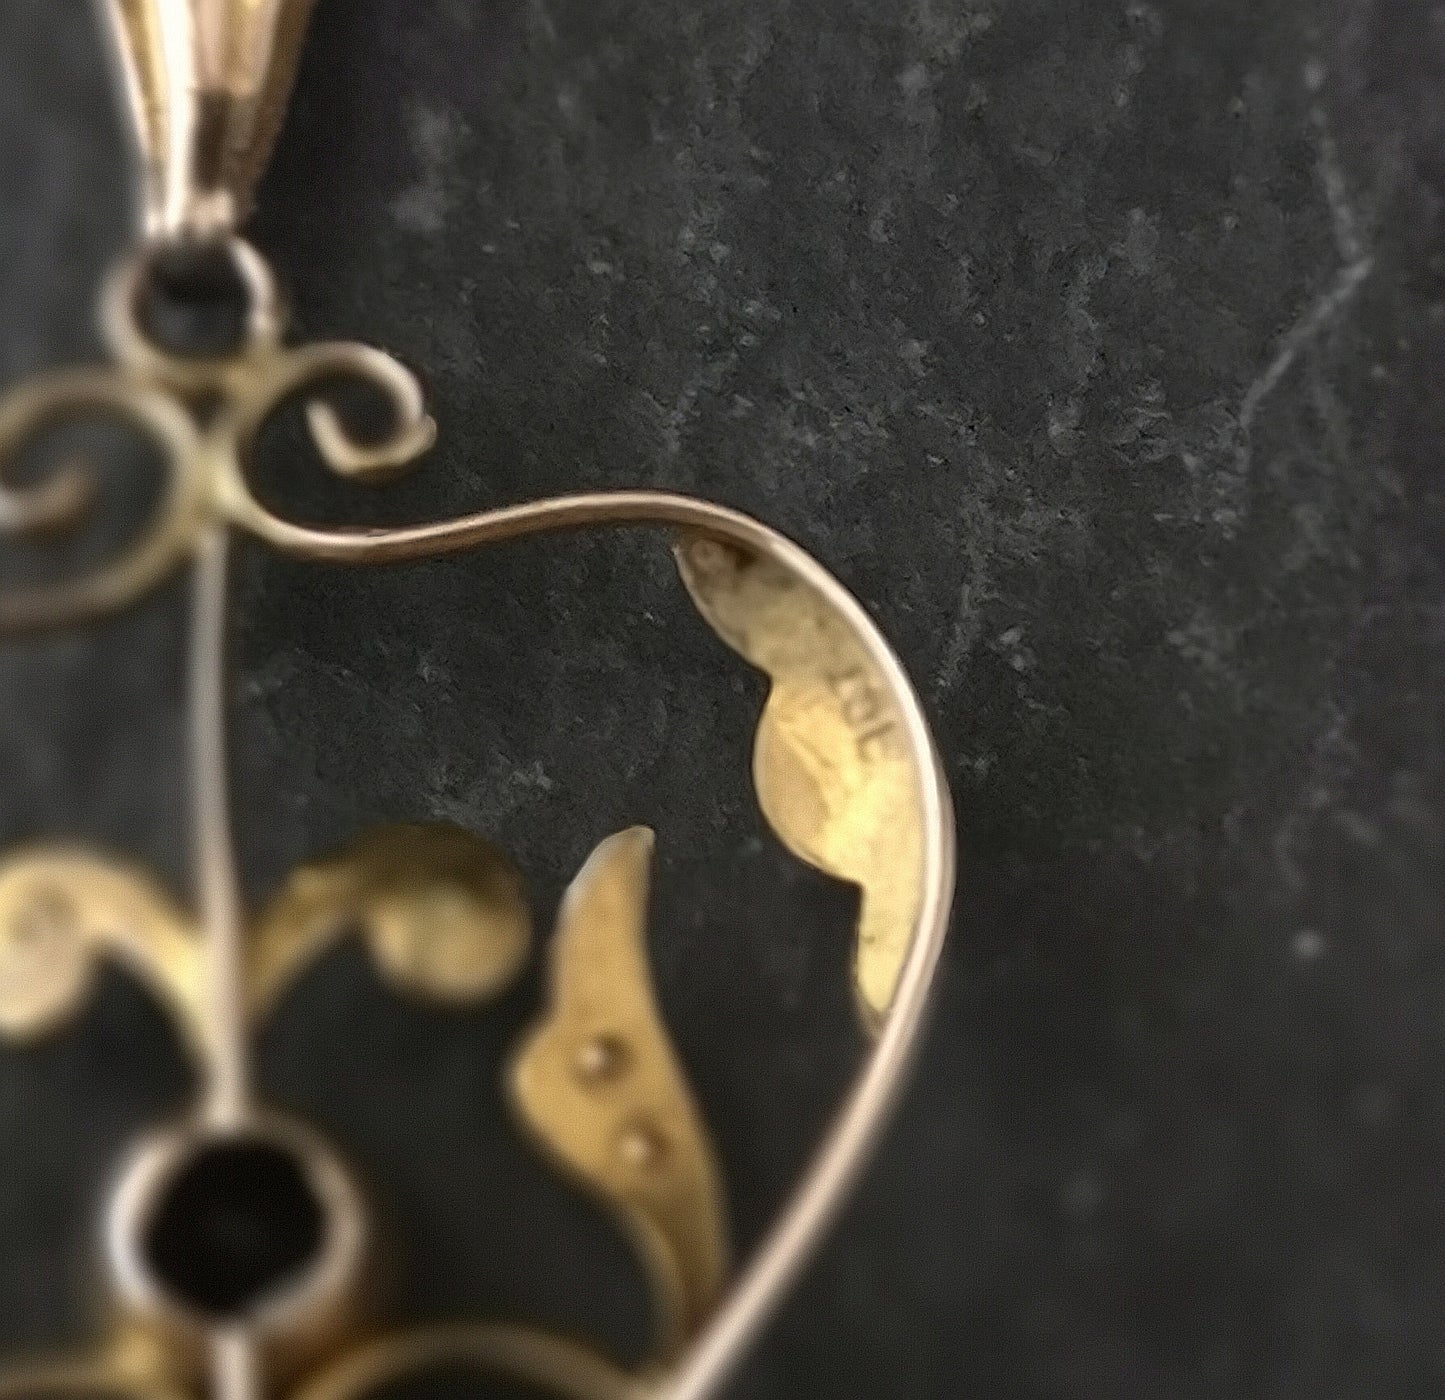 Antique Art Nouveau lavalier pendant, Amethyst, 9ct gold